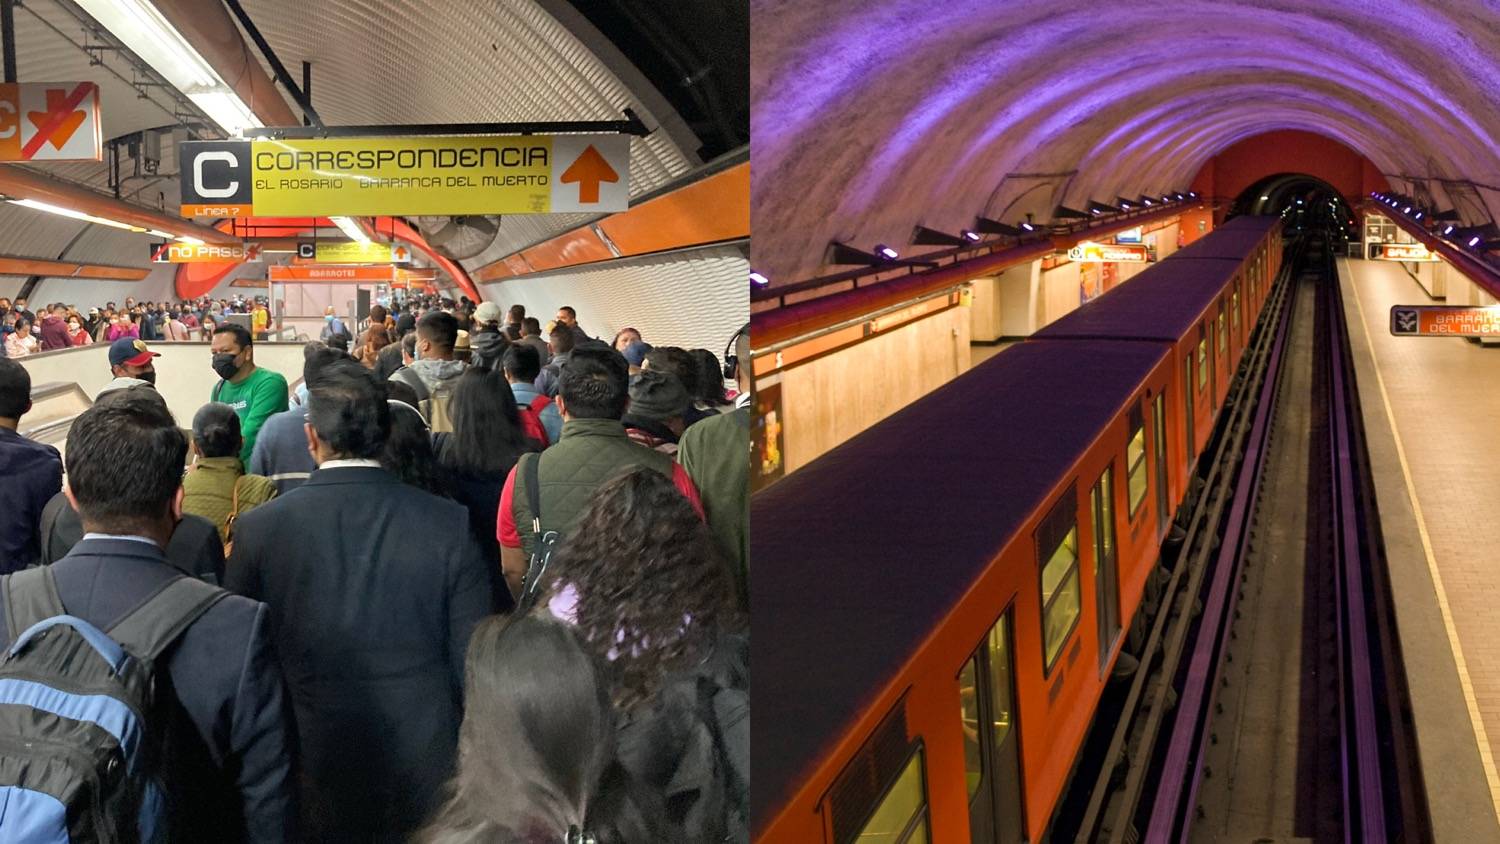 Qué fue lo que pasó en la Línea 7 del Metro de la CDMX?